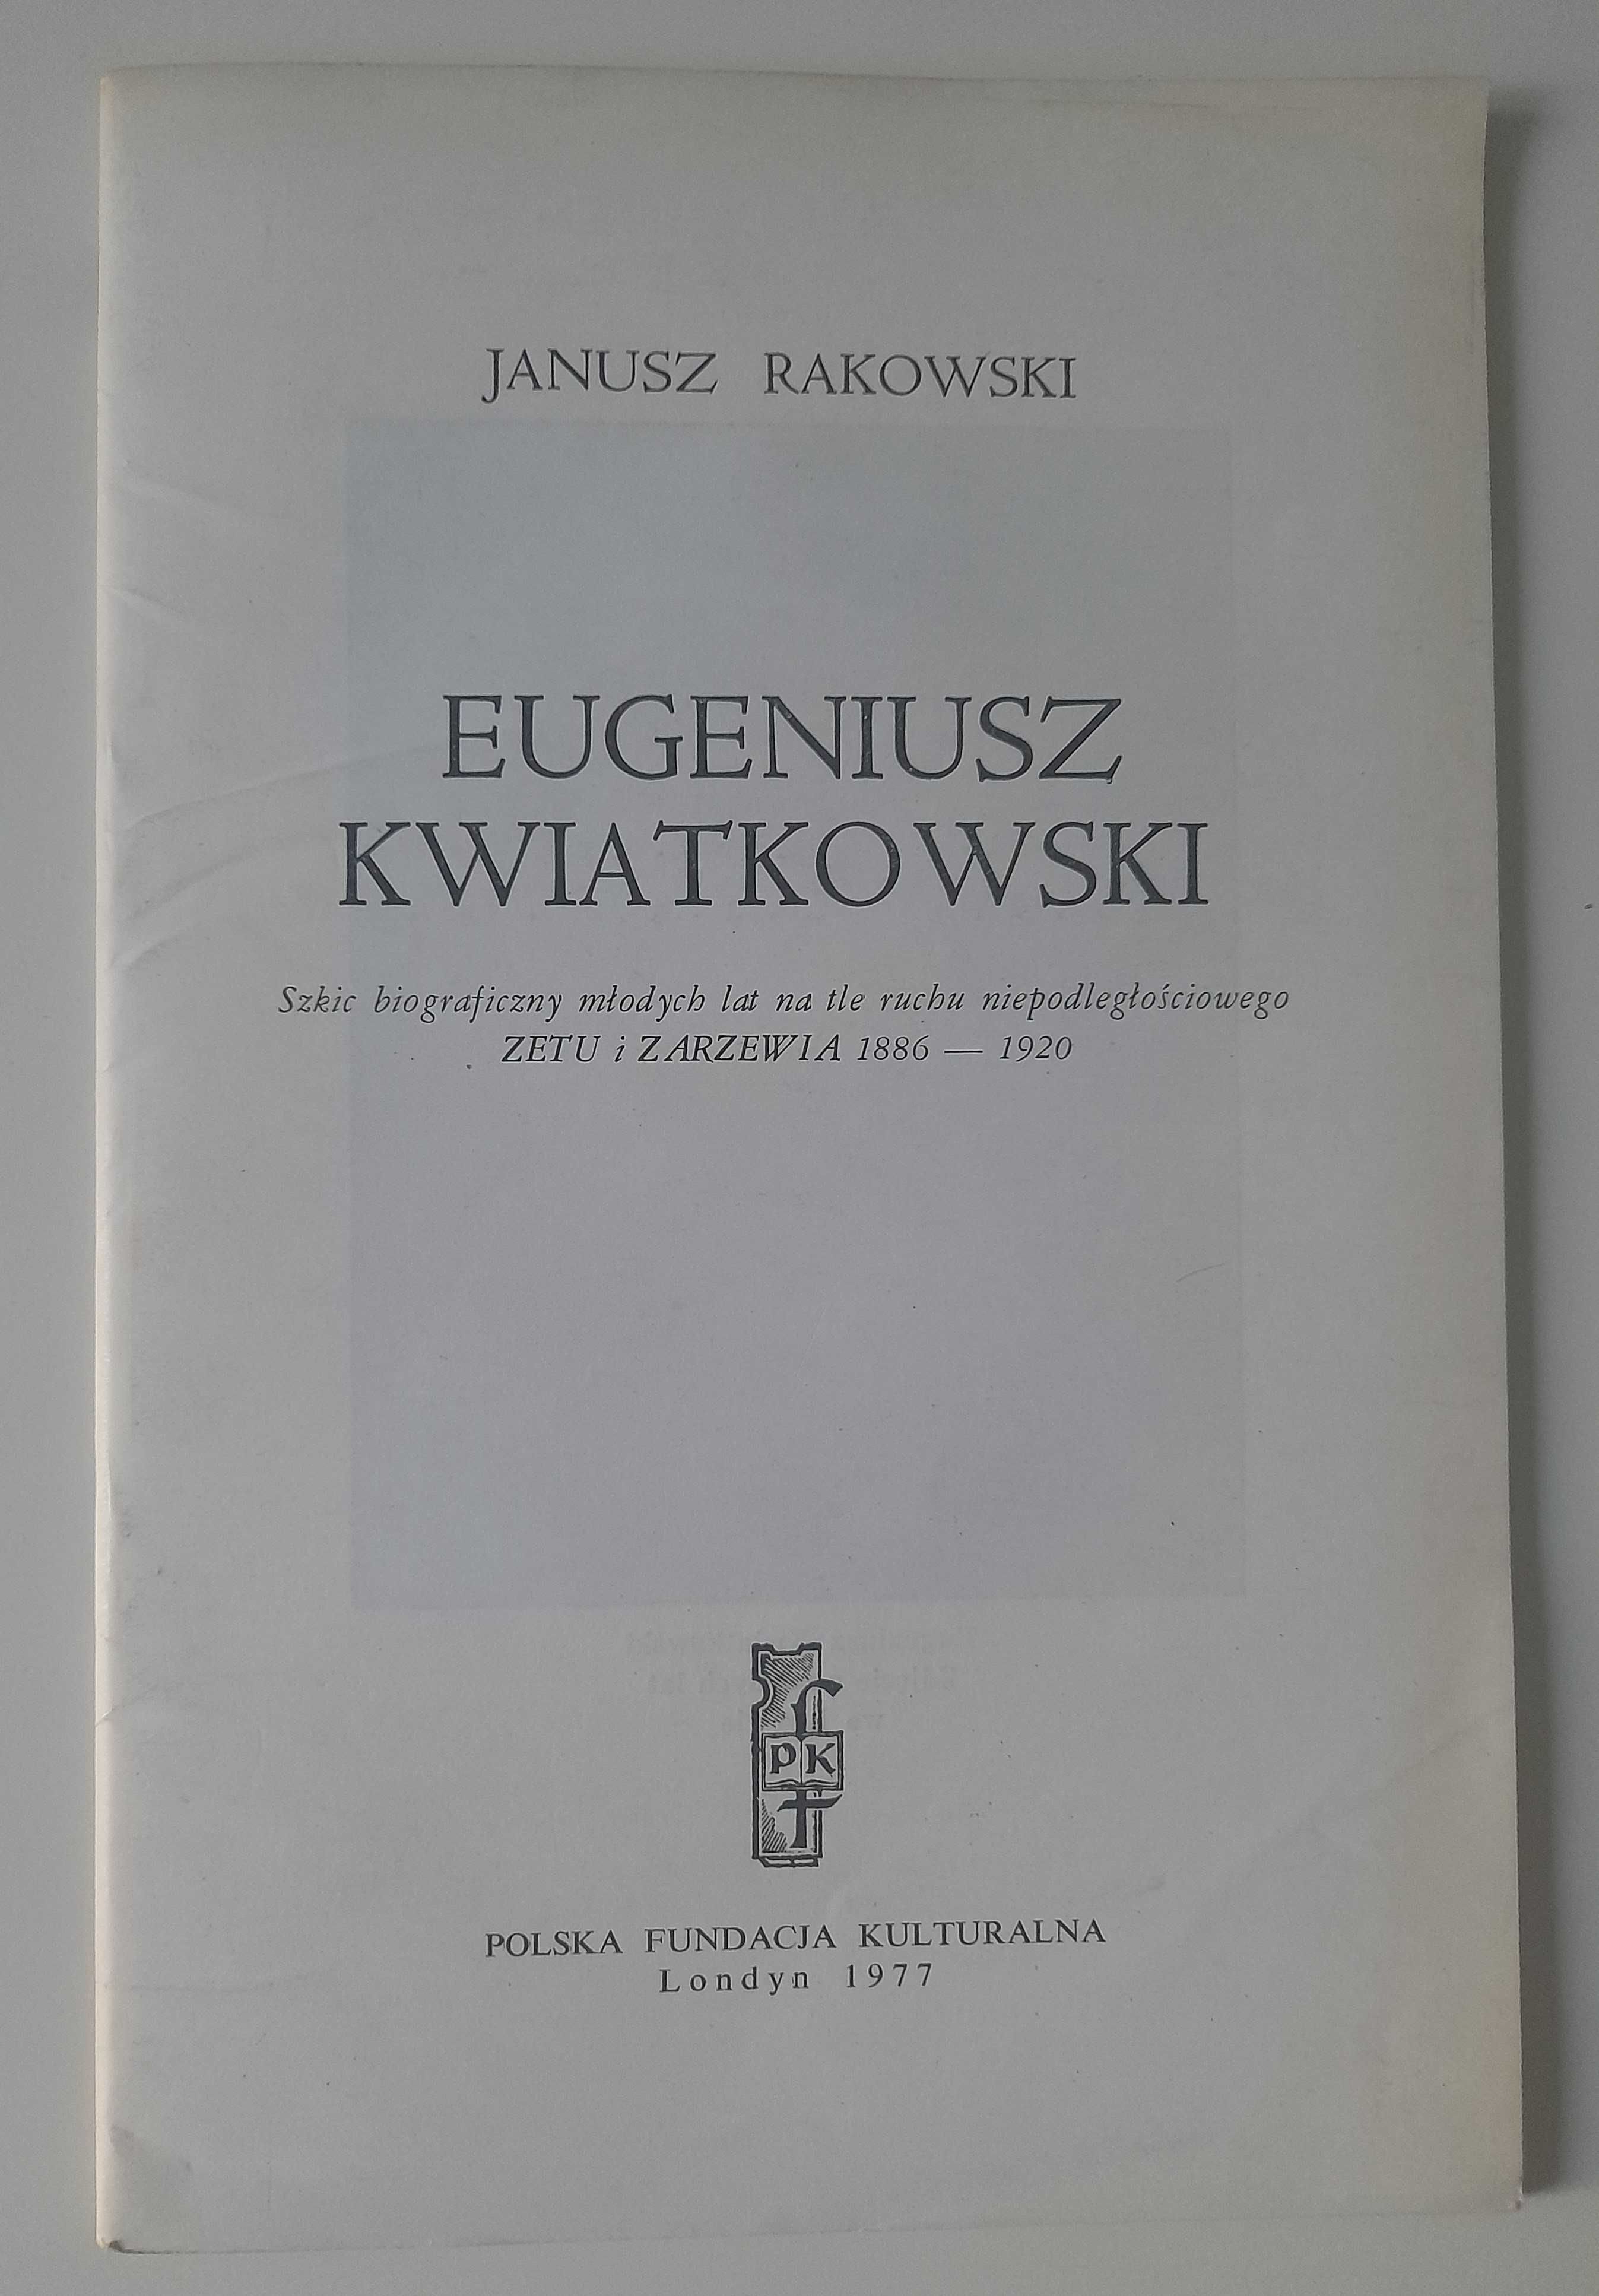 Eugeniusz Kwiatkowski szkic biograficzny Janusz Rakowski